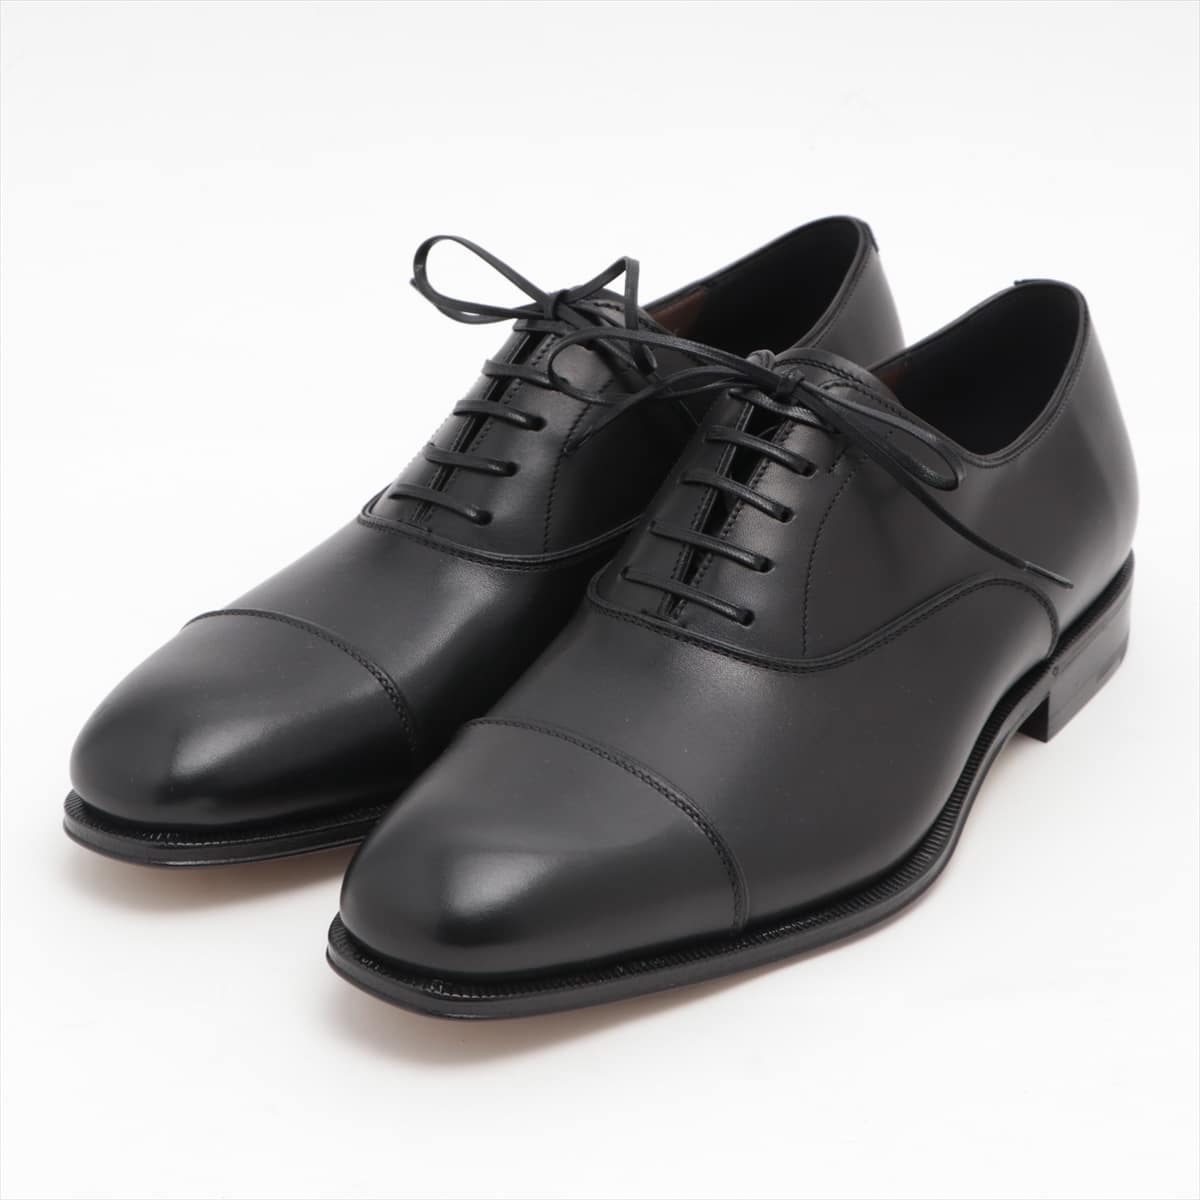 Ferragamo Leather Dress shoes 6EE Men's Black Oxford Lace up